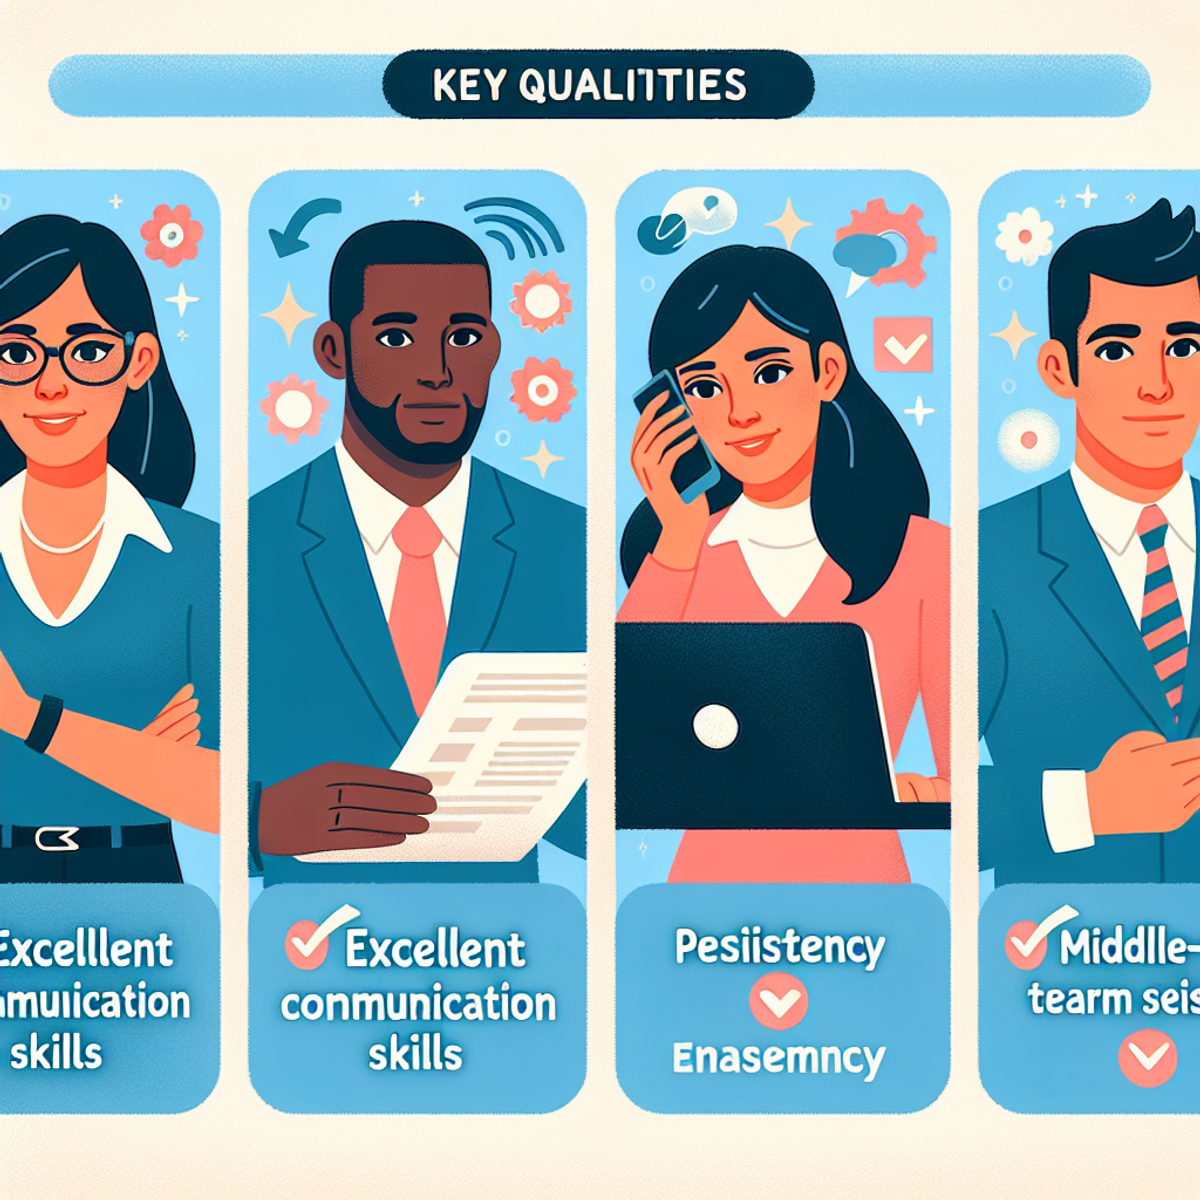 Key qualities when hiring sales people